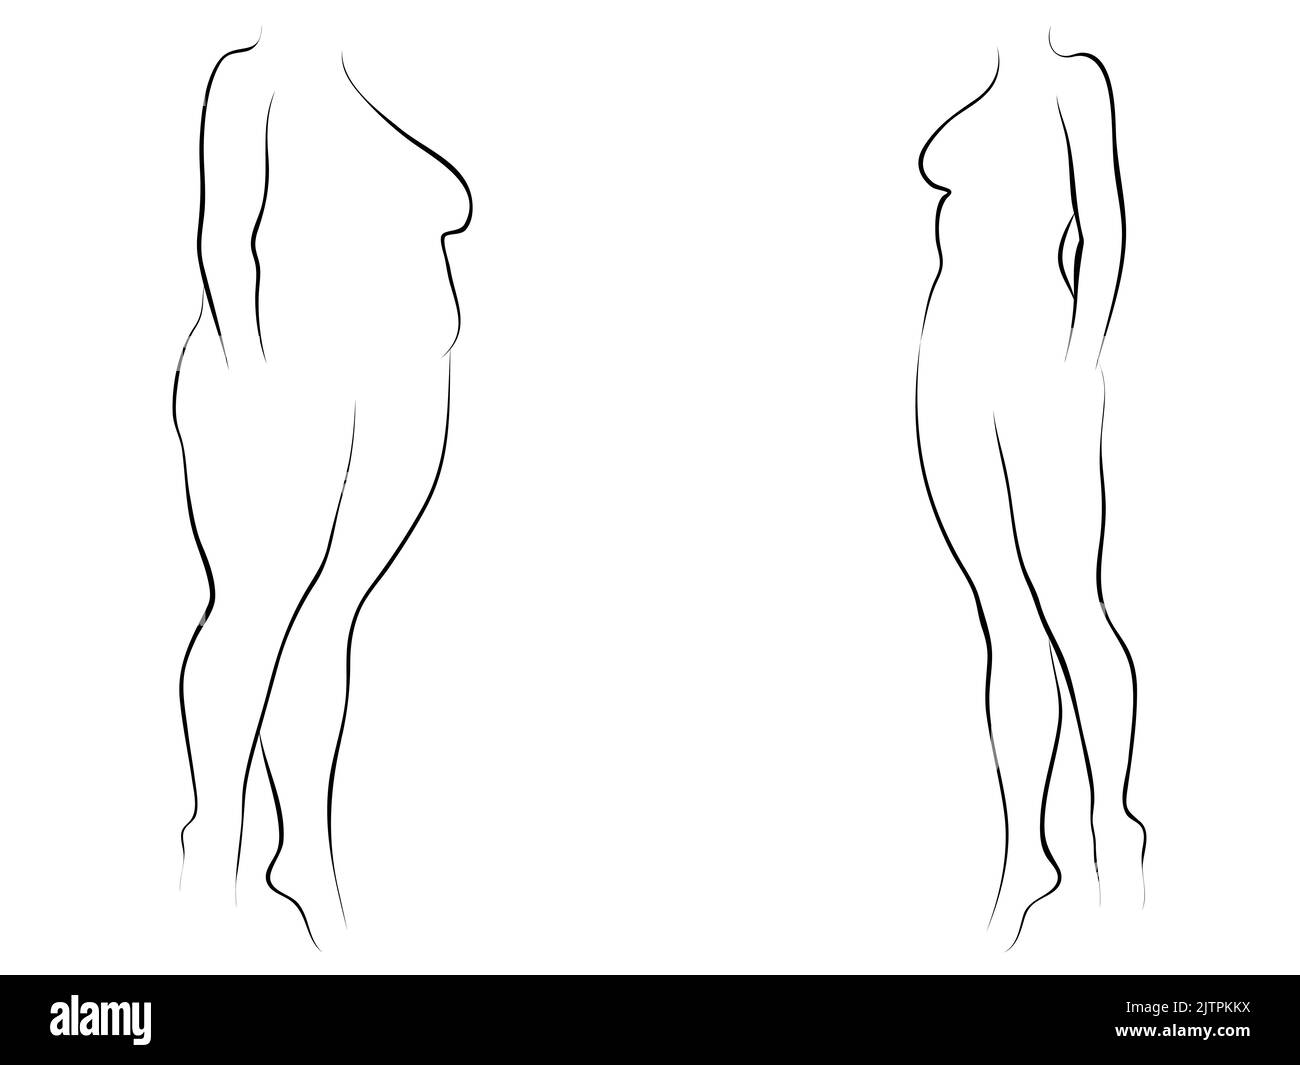 Concettuale grasso sovrappeso femminile vs Slim FIT corpo sano dopo perdita di peso o dieta con muscoli sottile giovane donna. 3D illustrazione per fitness, nutrit Foto Stock